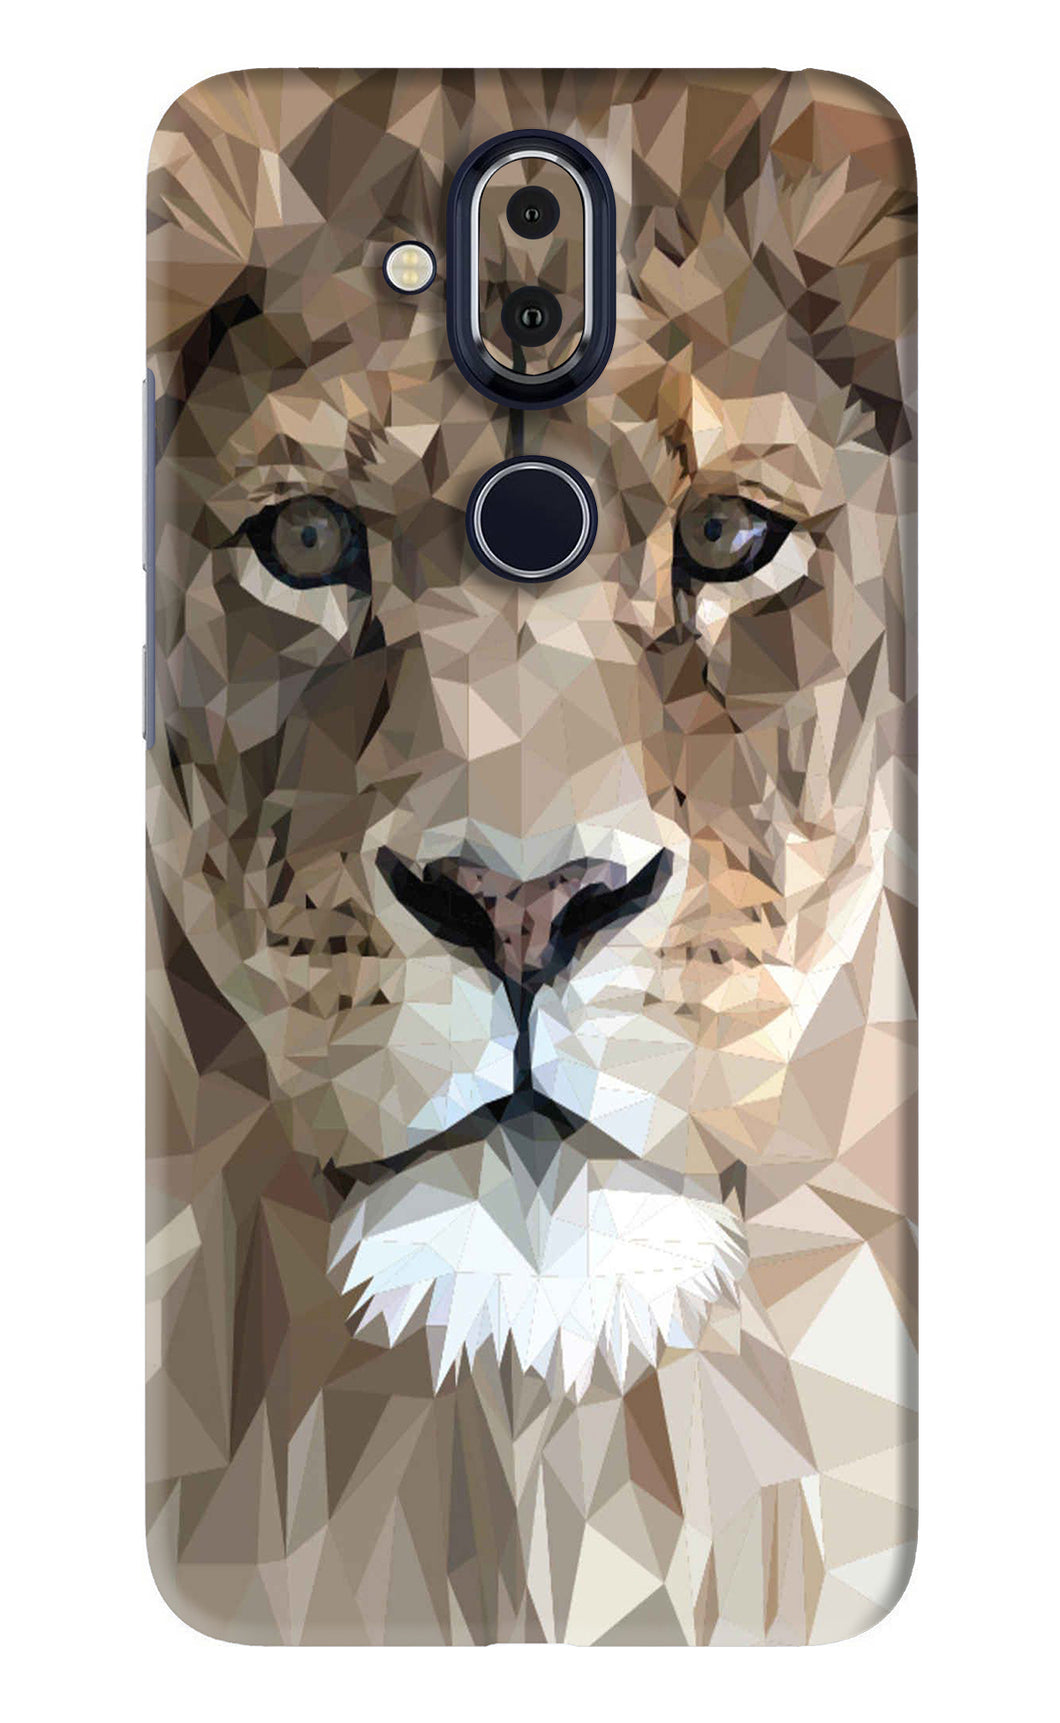 Lion Art Nokia 8 Back Skin Wrap